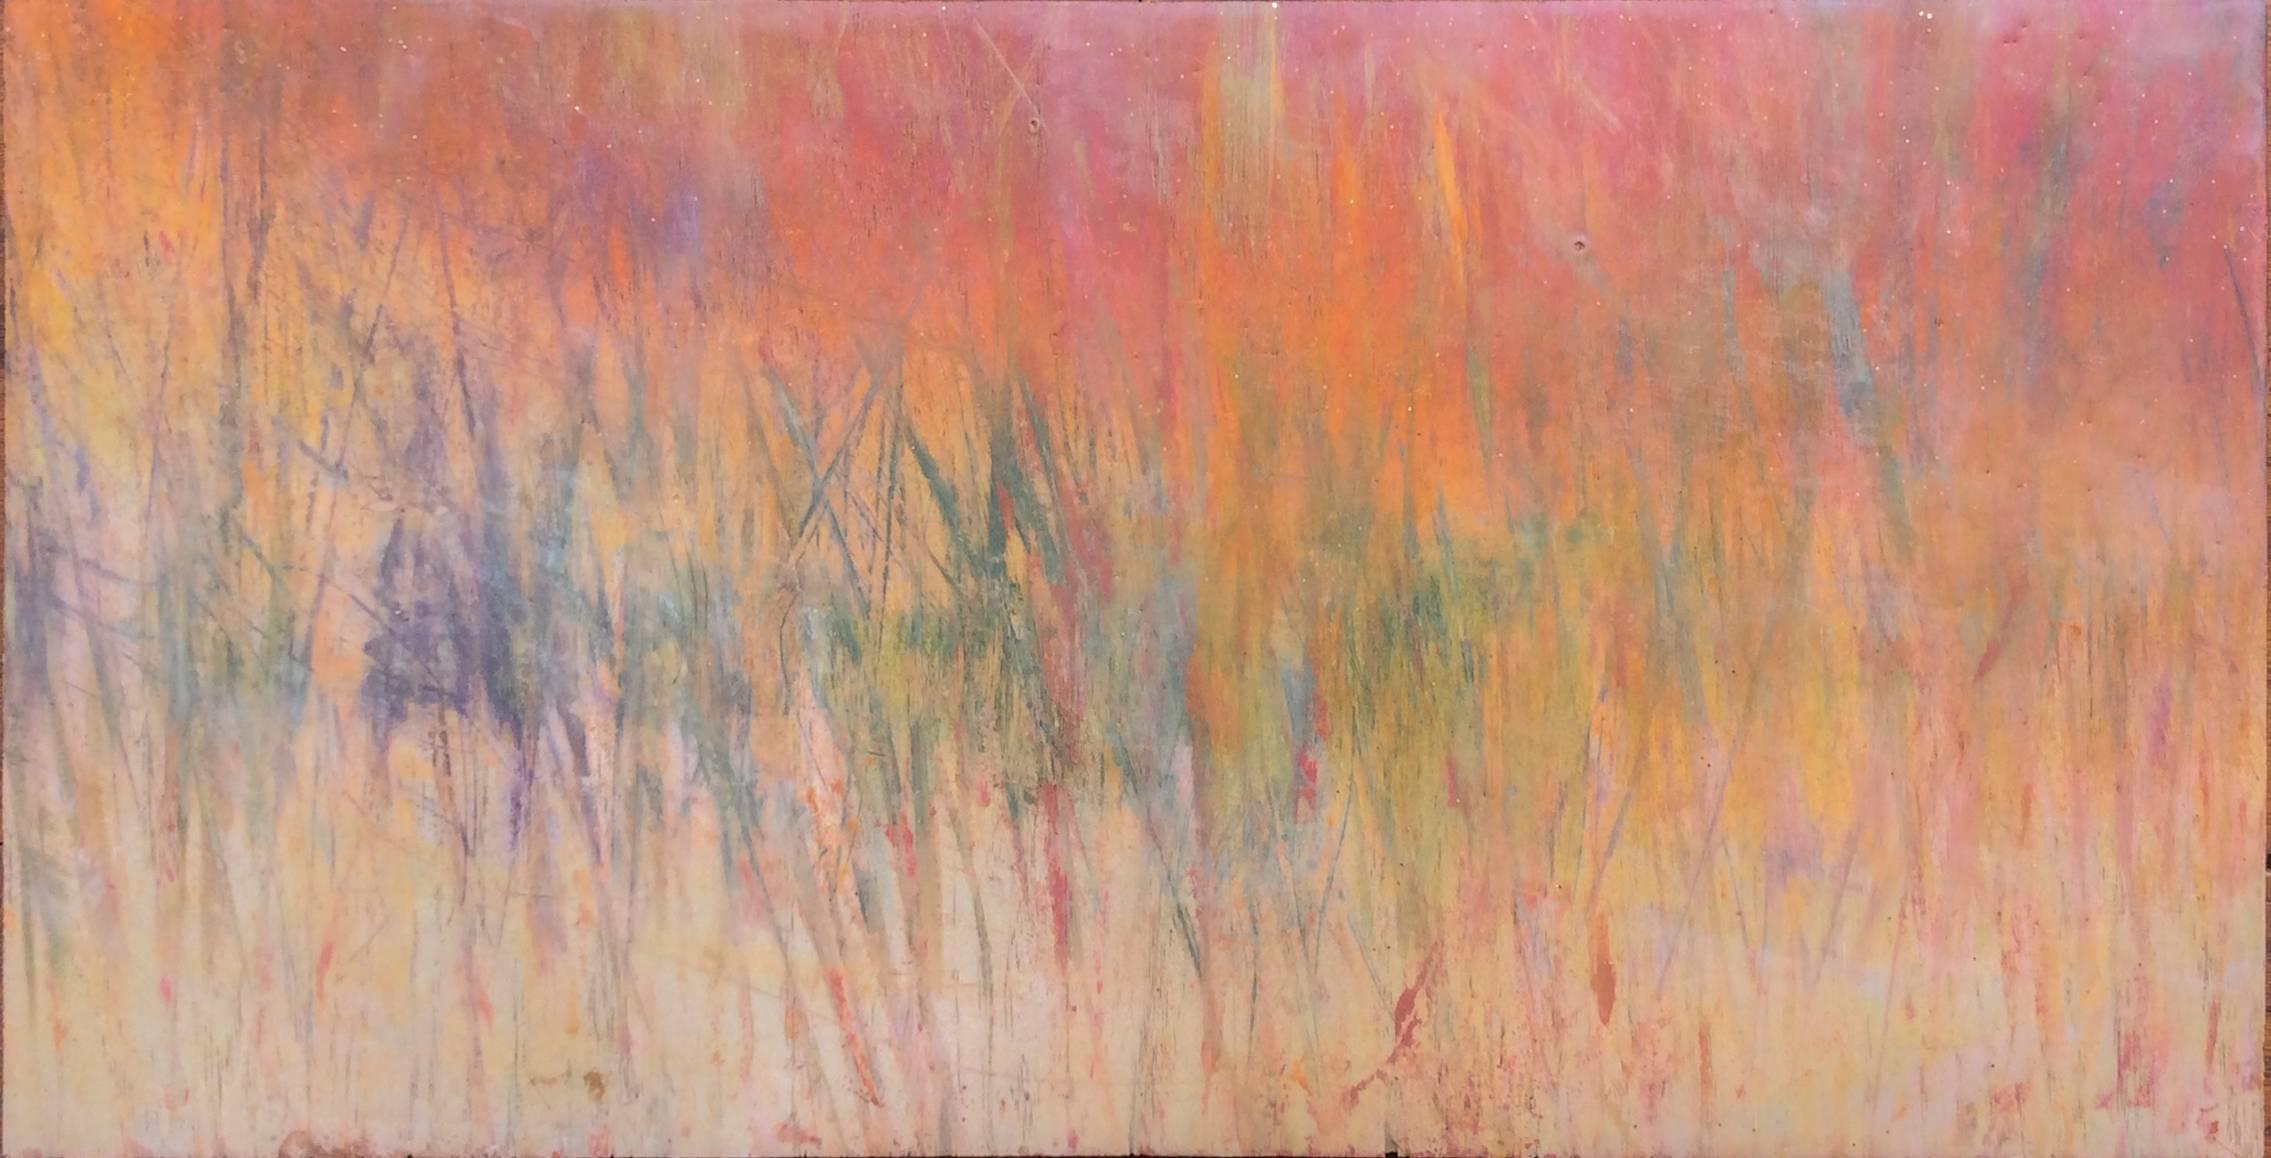 Untitled 4 (Abstract Encaustic Painting in Pink, Orange, Beige, Green & Purple)